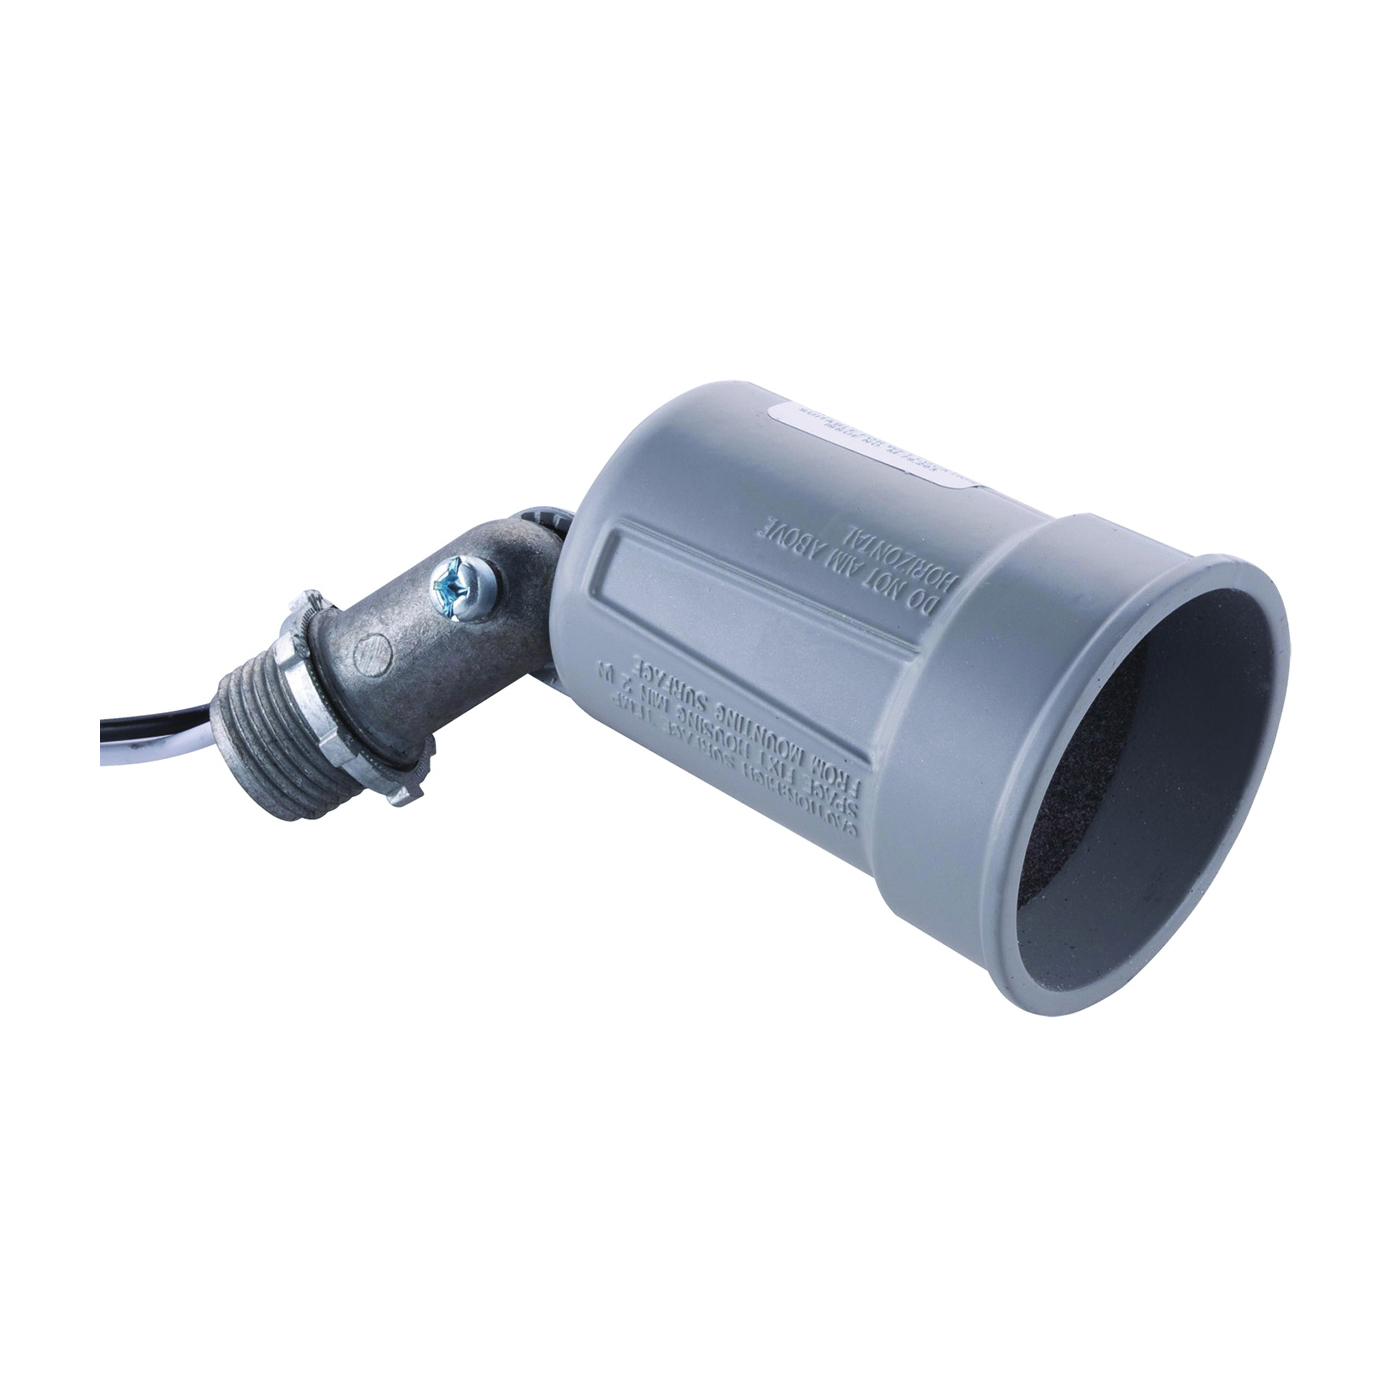 5606-0 Lamp Holder, 120 V, 75 to 150 W, Gray